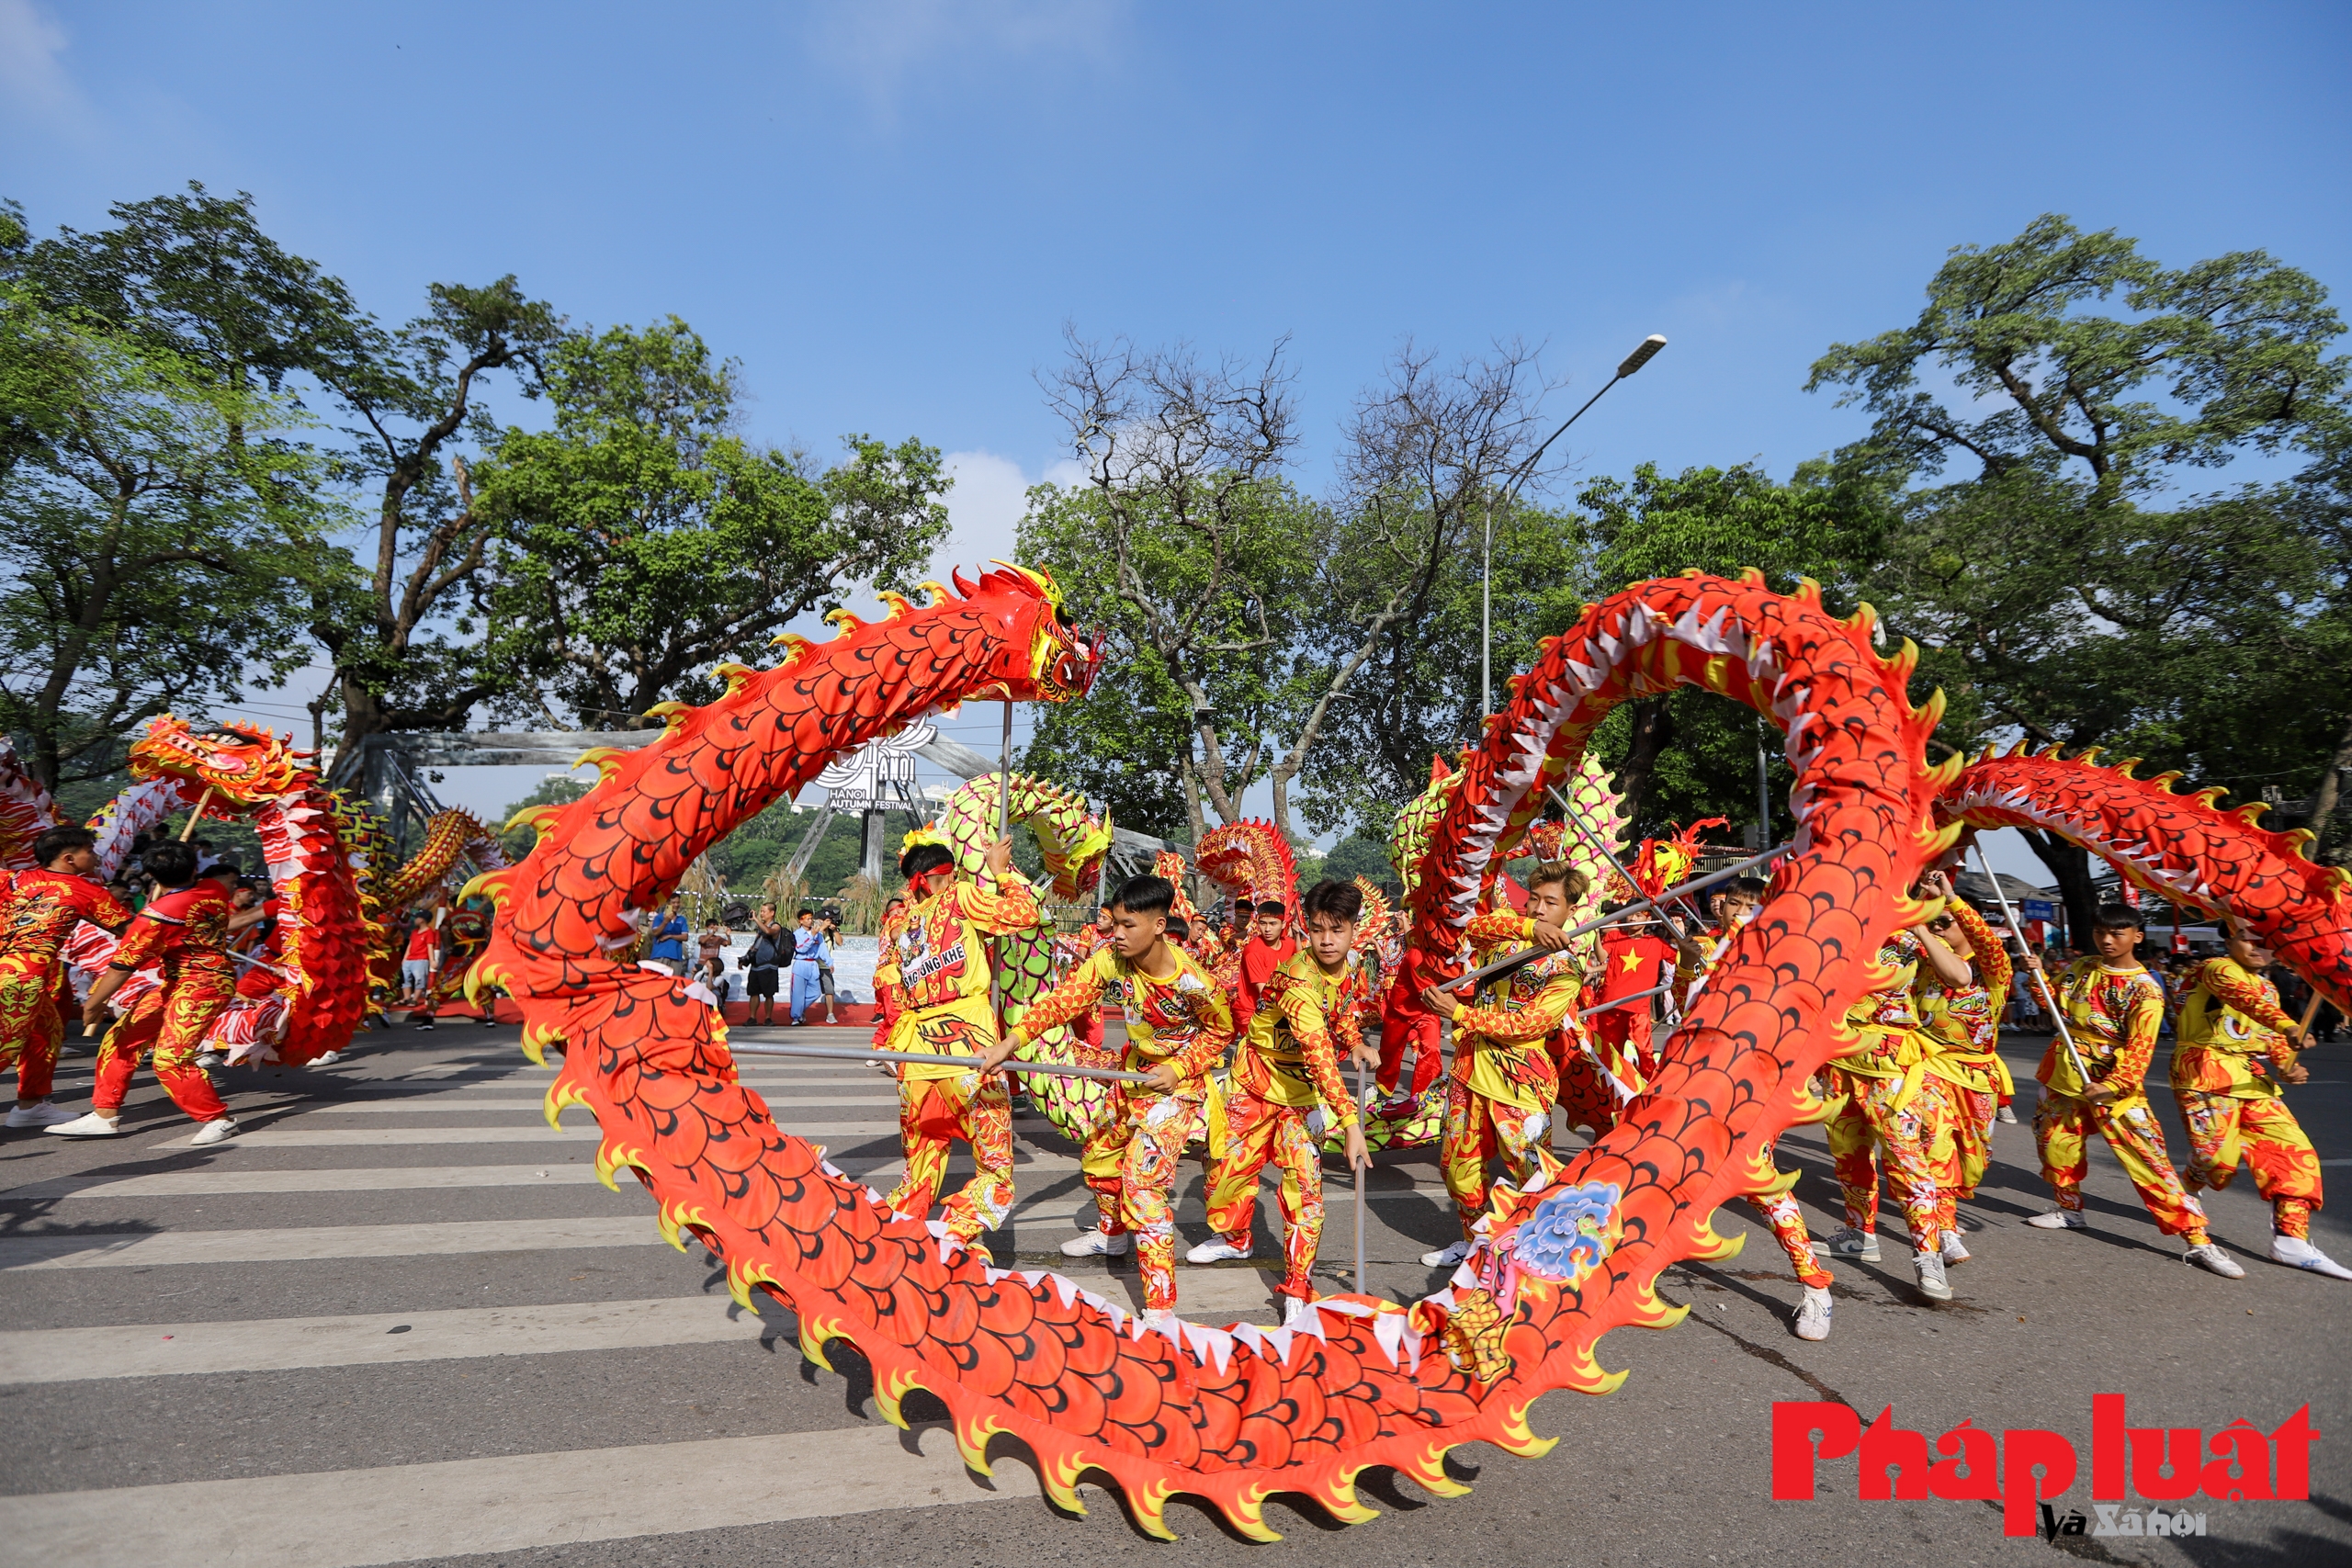 Múa rồng - Nét đẹp văn hóa truyền thống của đất Thăng Long